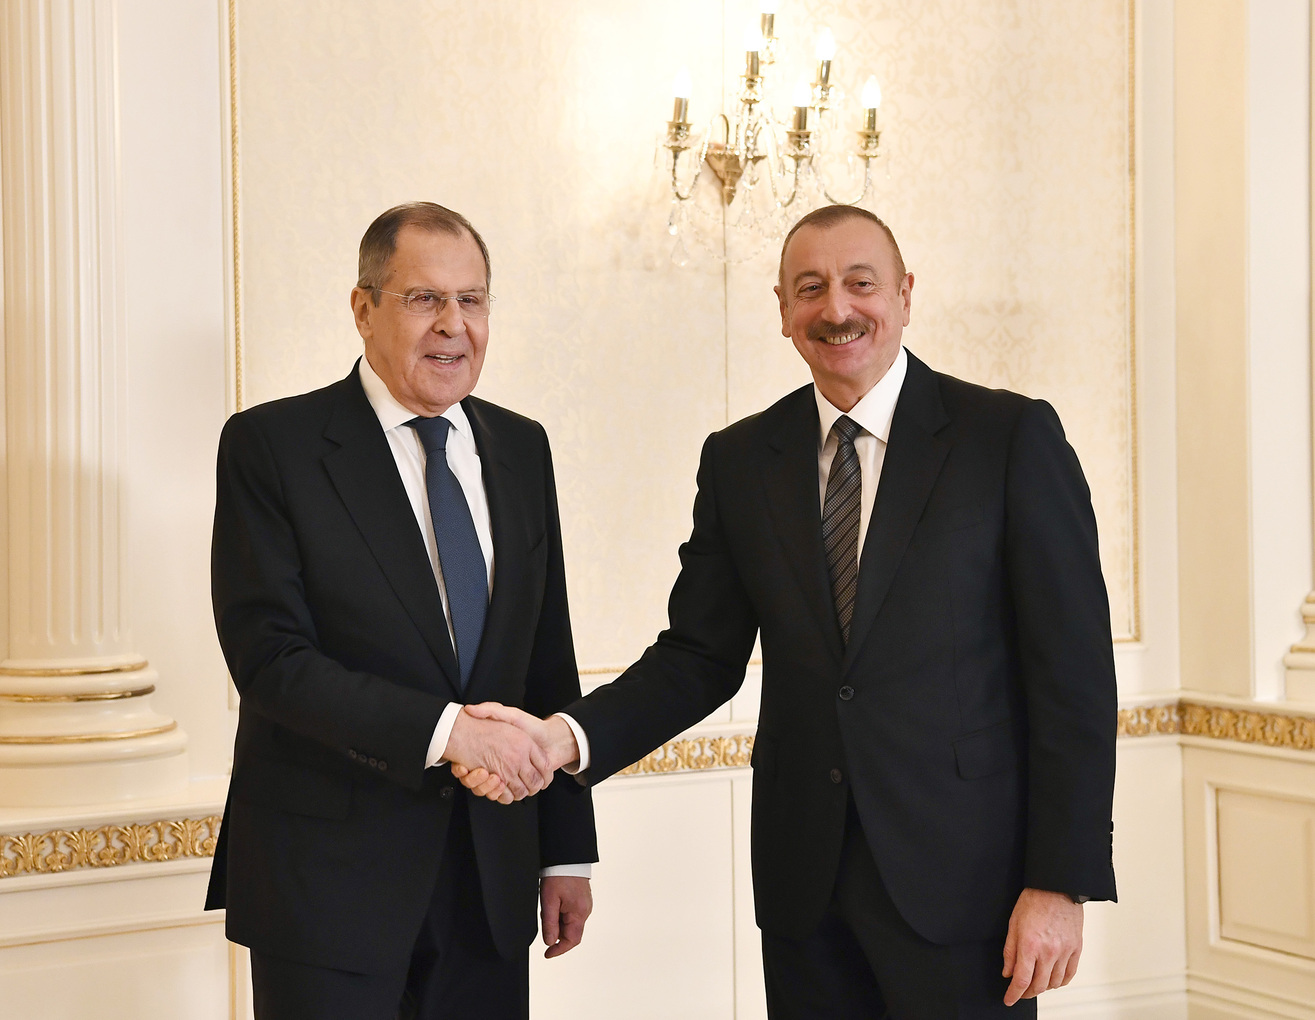 
											
											Lavrov Ozarbayjonda: u Aliyev bilan nimalarni muhokama qildi?
											
											